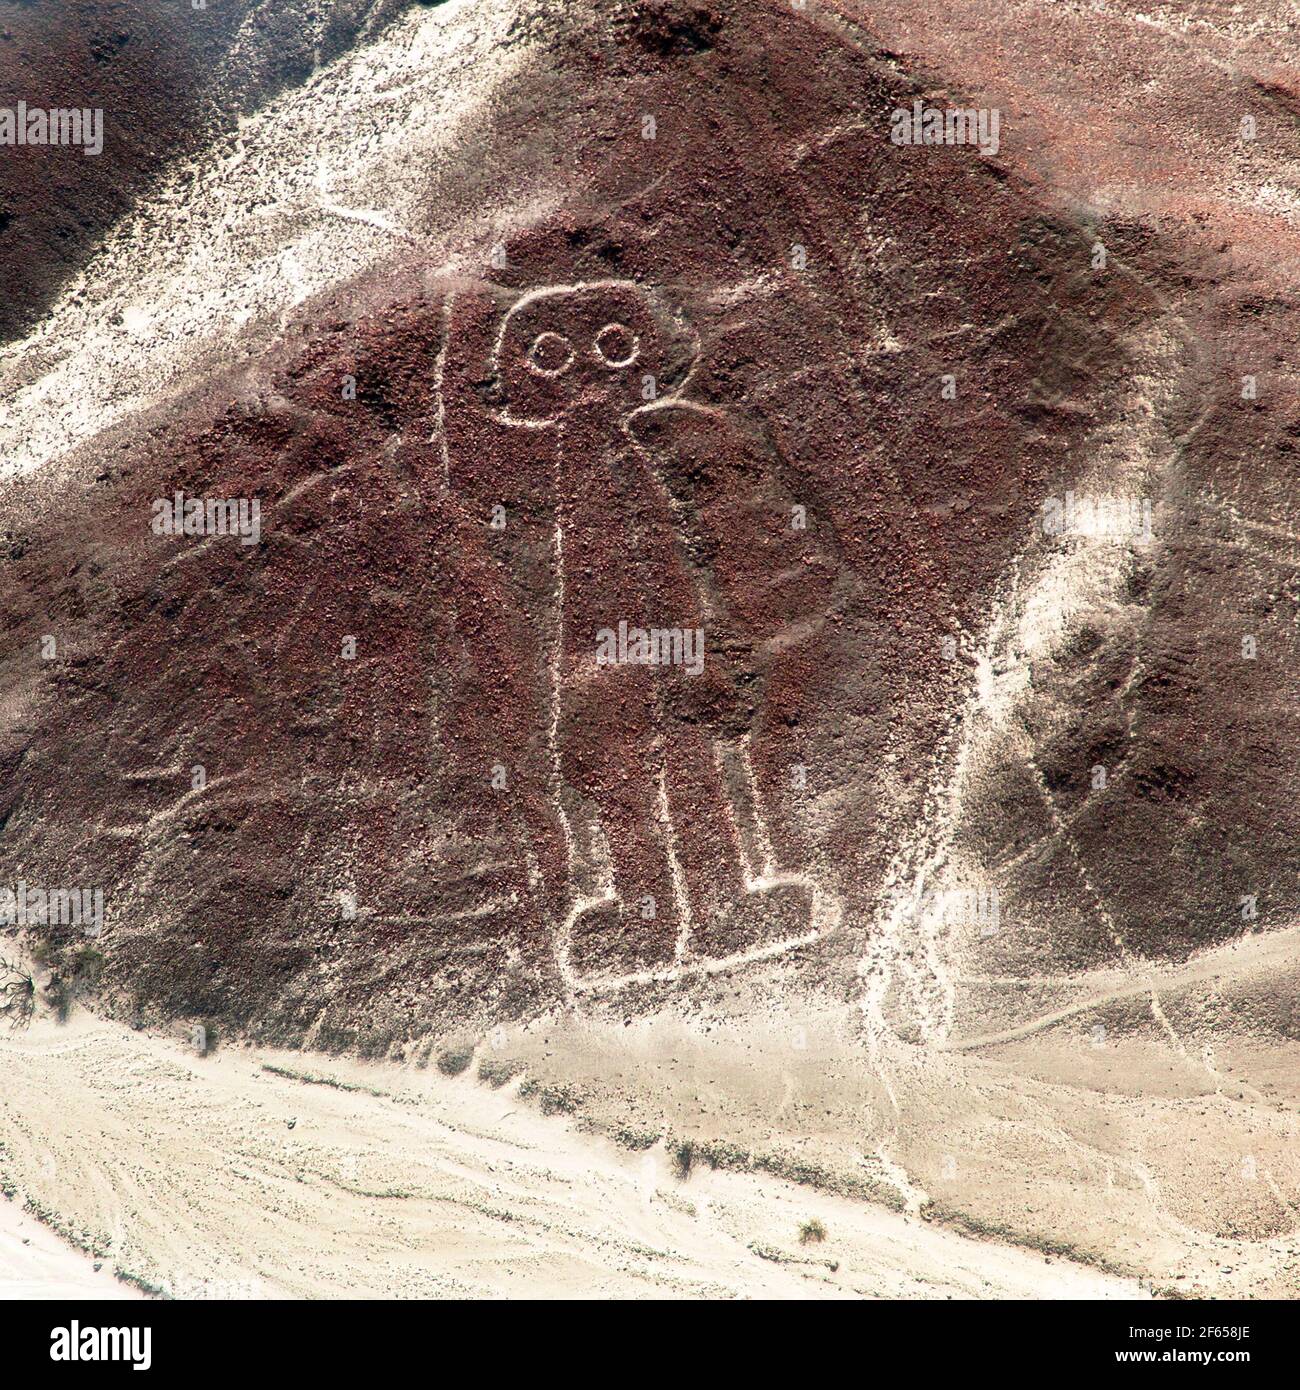 Der Raumfahrer oder Raumfahrer, Nazca oder Nasca geheimnisvolle Linien und Geoglyphen Luftbild, Wahrzeichen in Peru Stockfoto